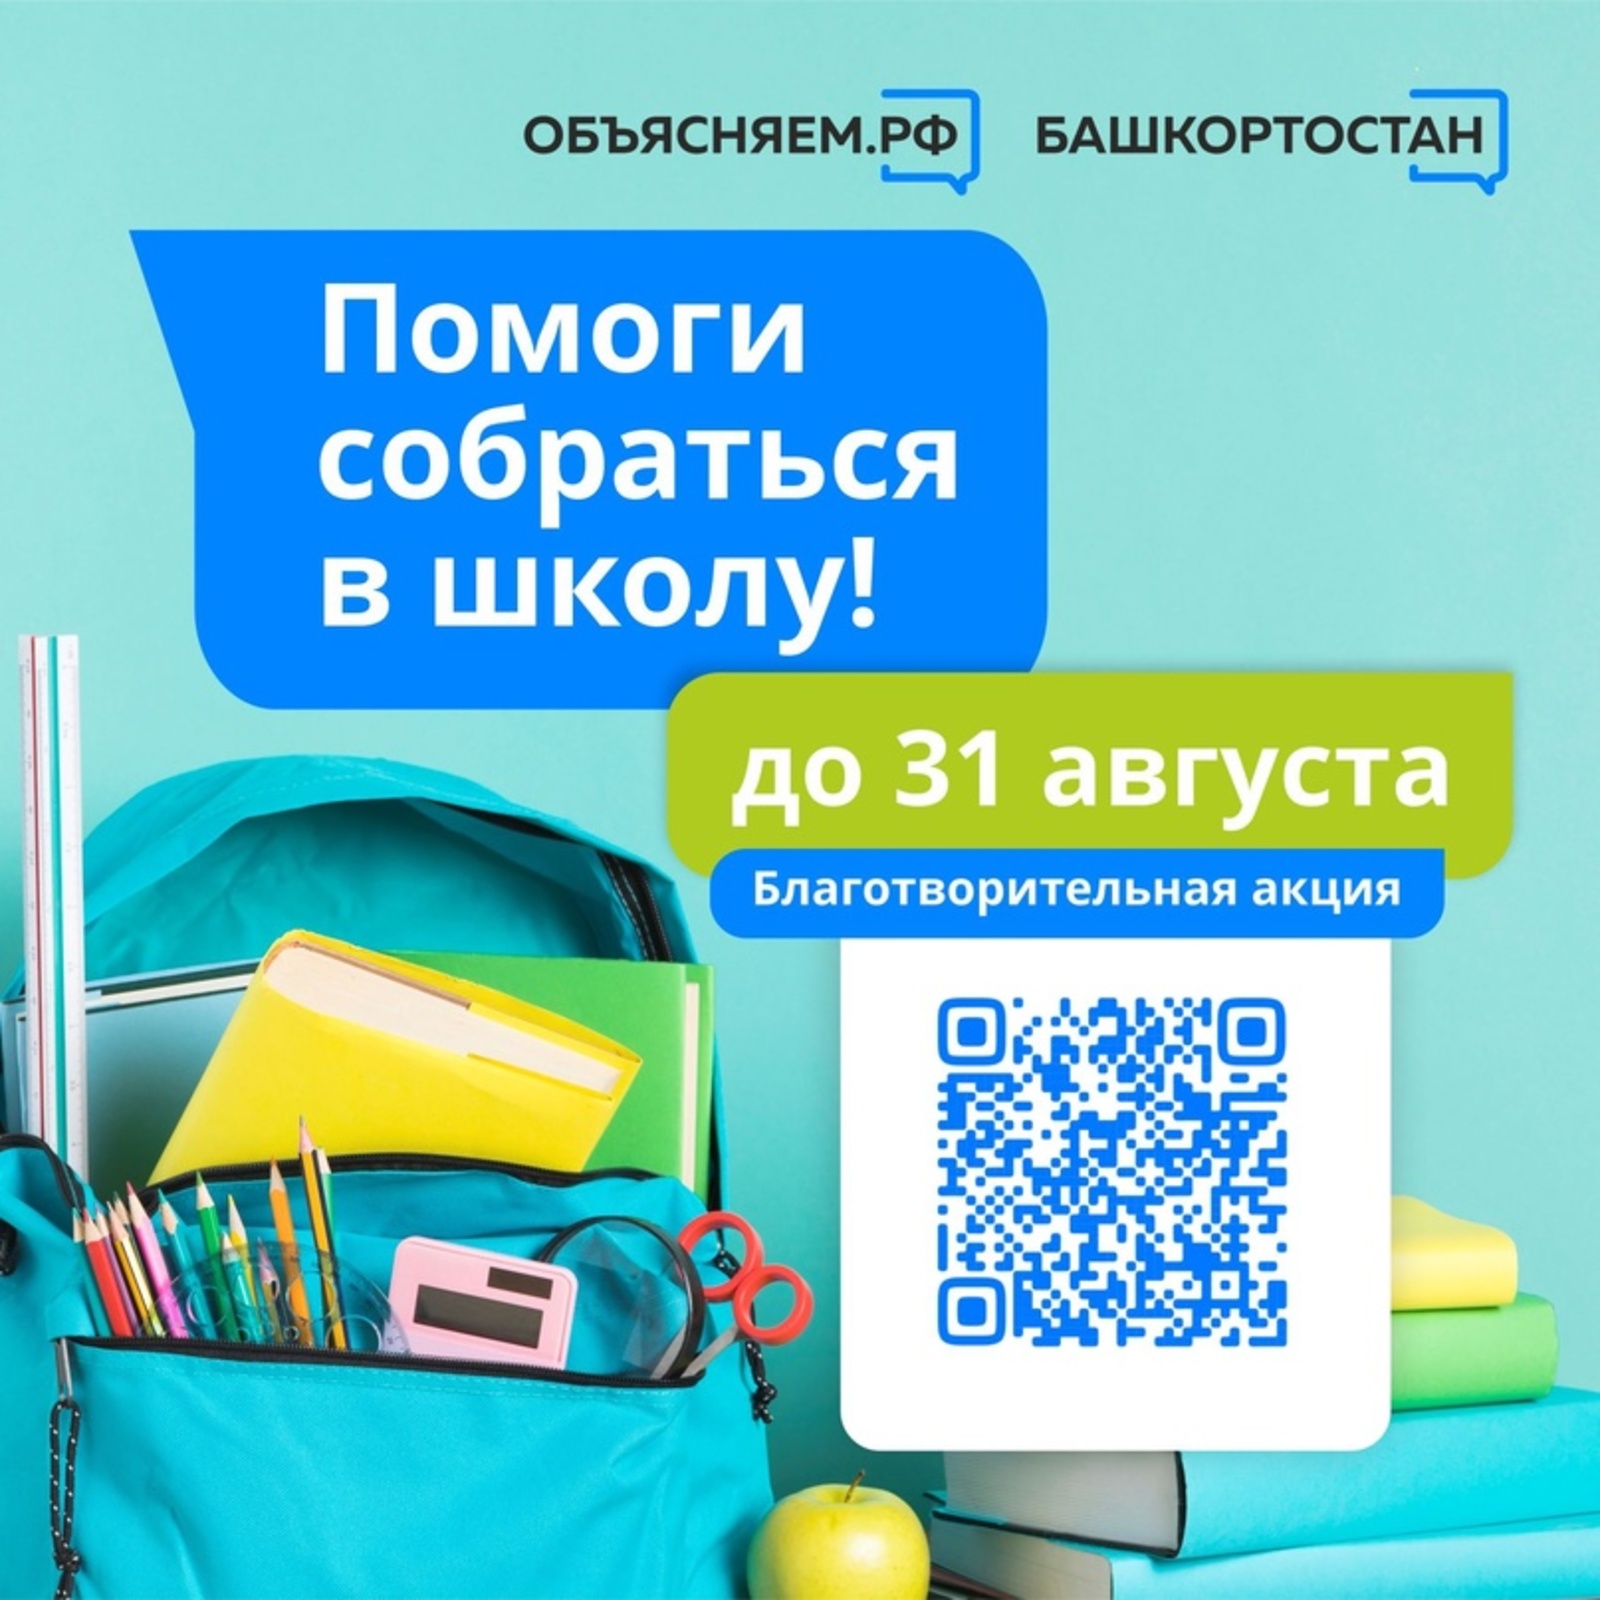 В Башкортостане проходит благотворительная акция “Помоги собраться в школу”